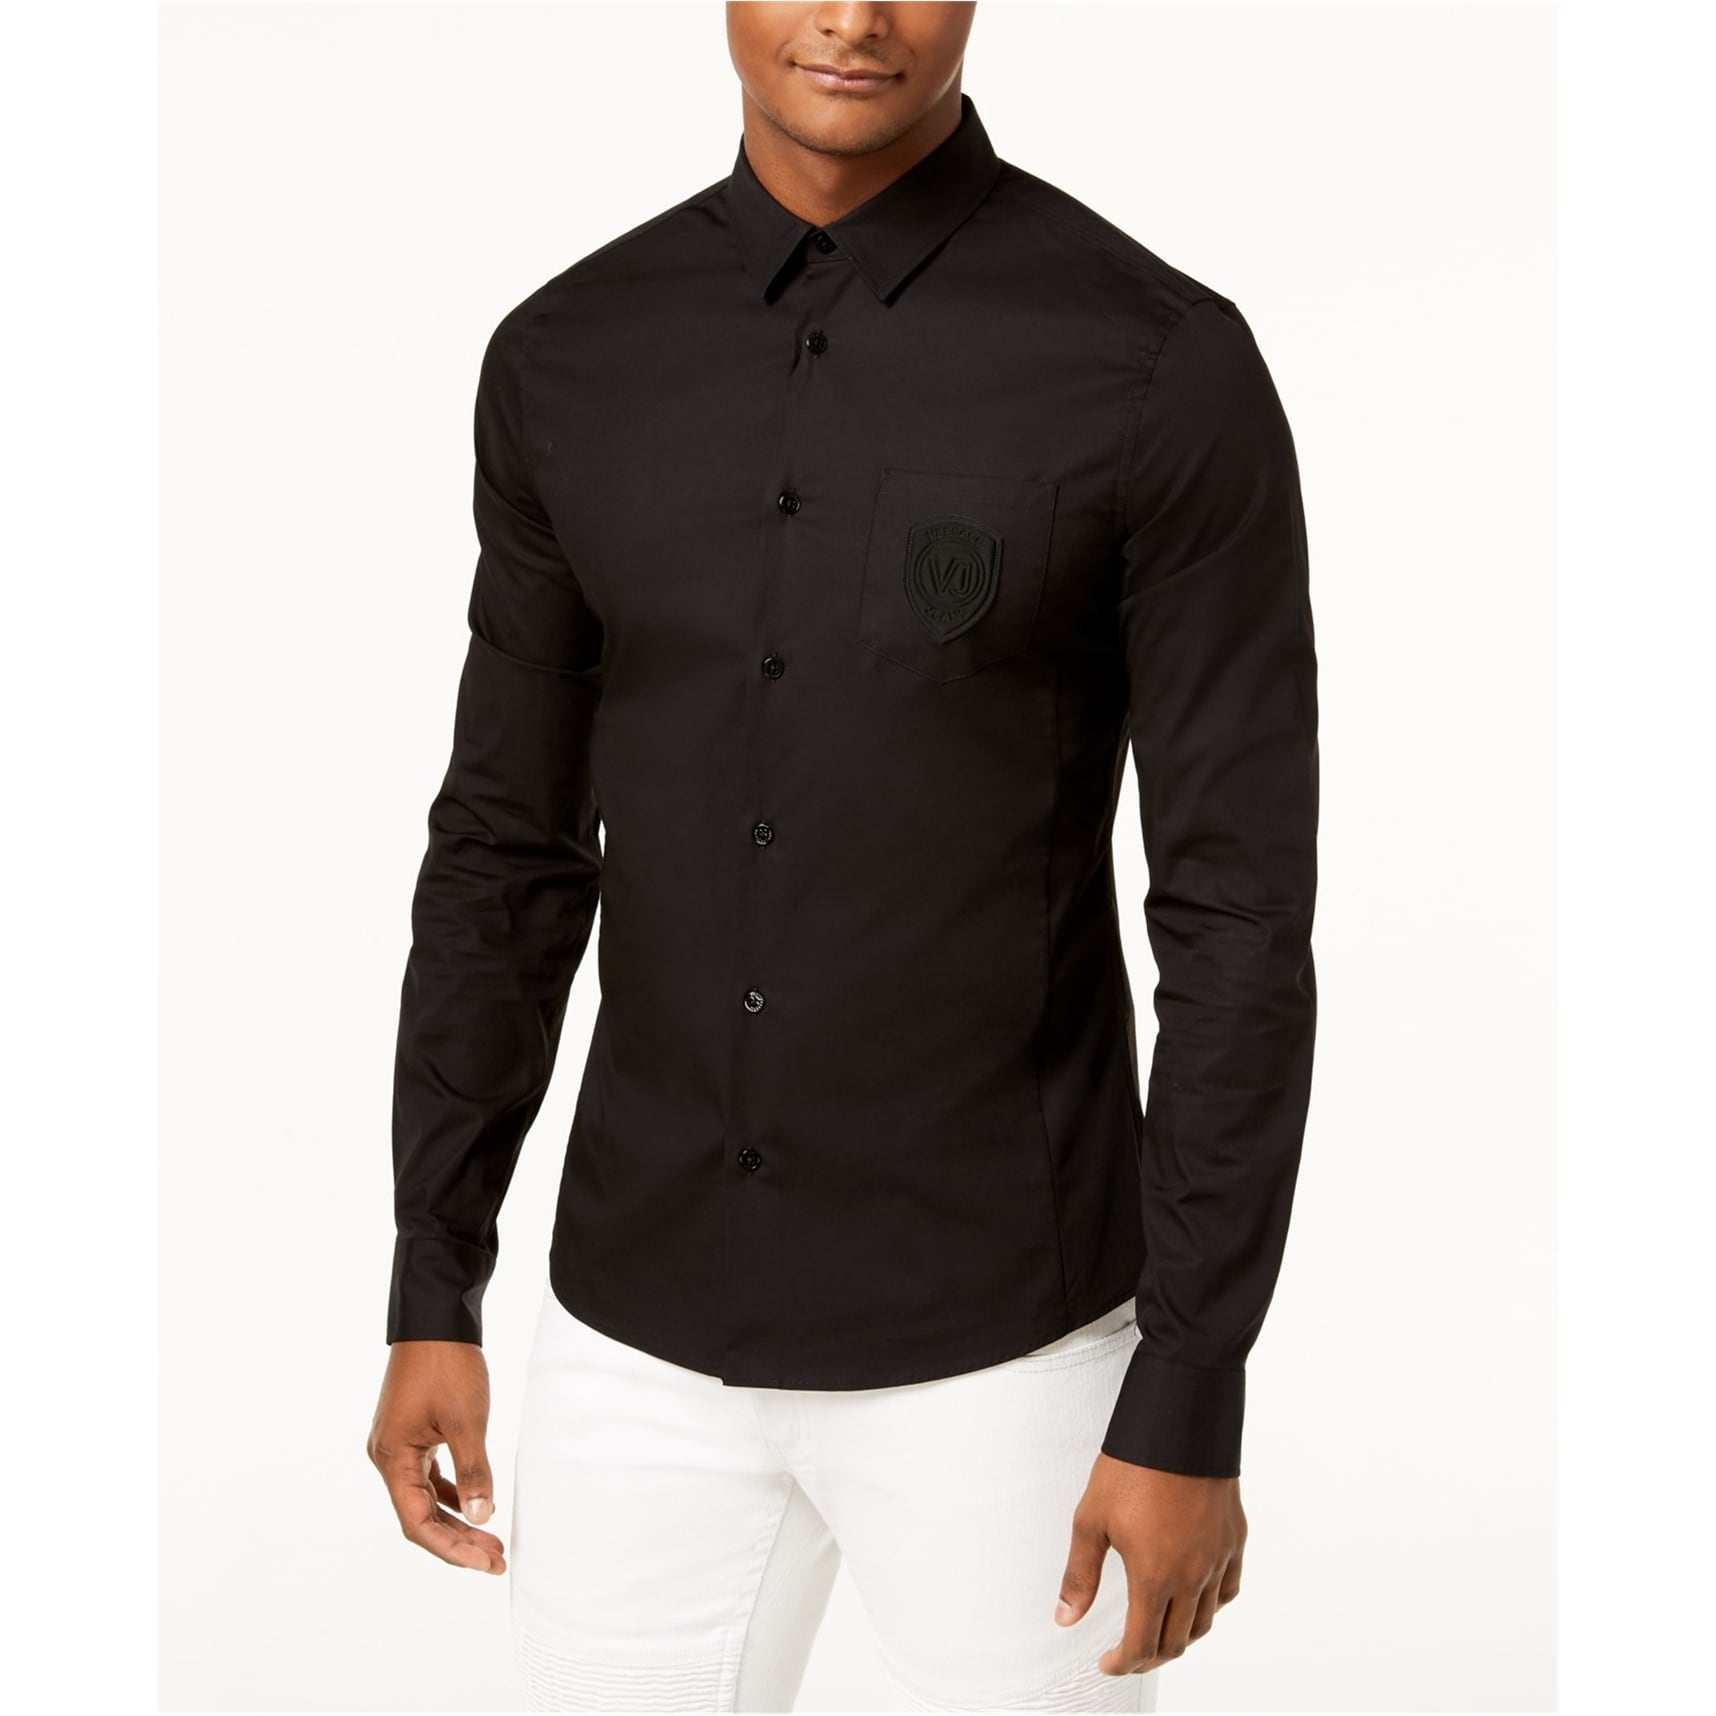 versace men's button up shirt